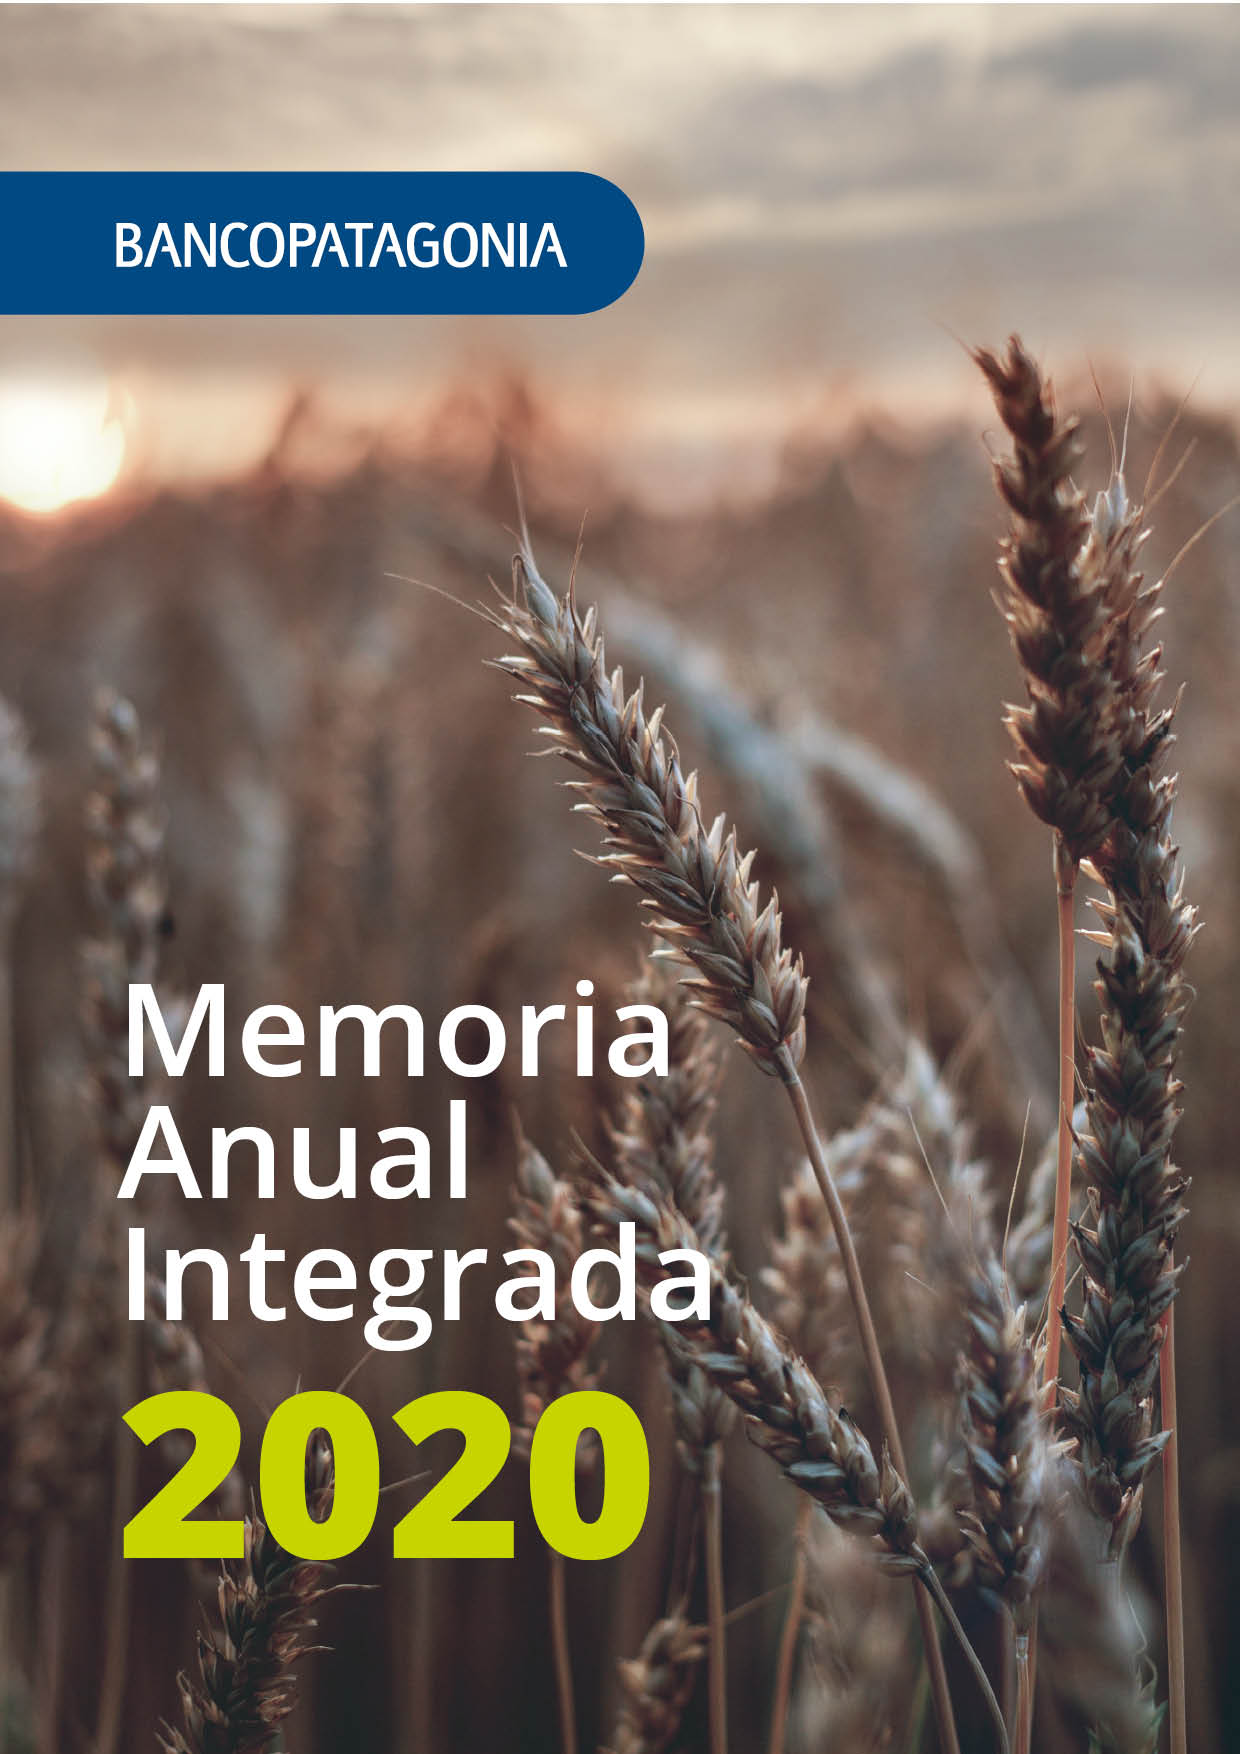 Banco Patagonia publicó su Memoria Anual Integrada 2020